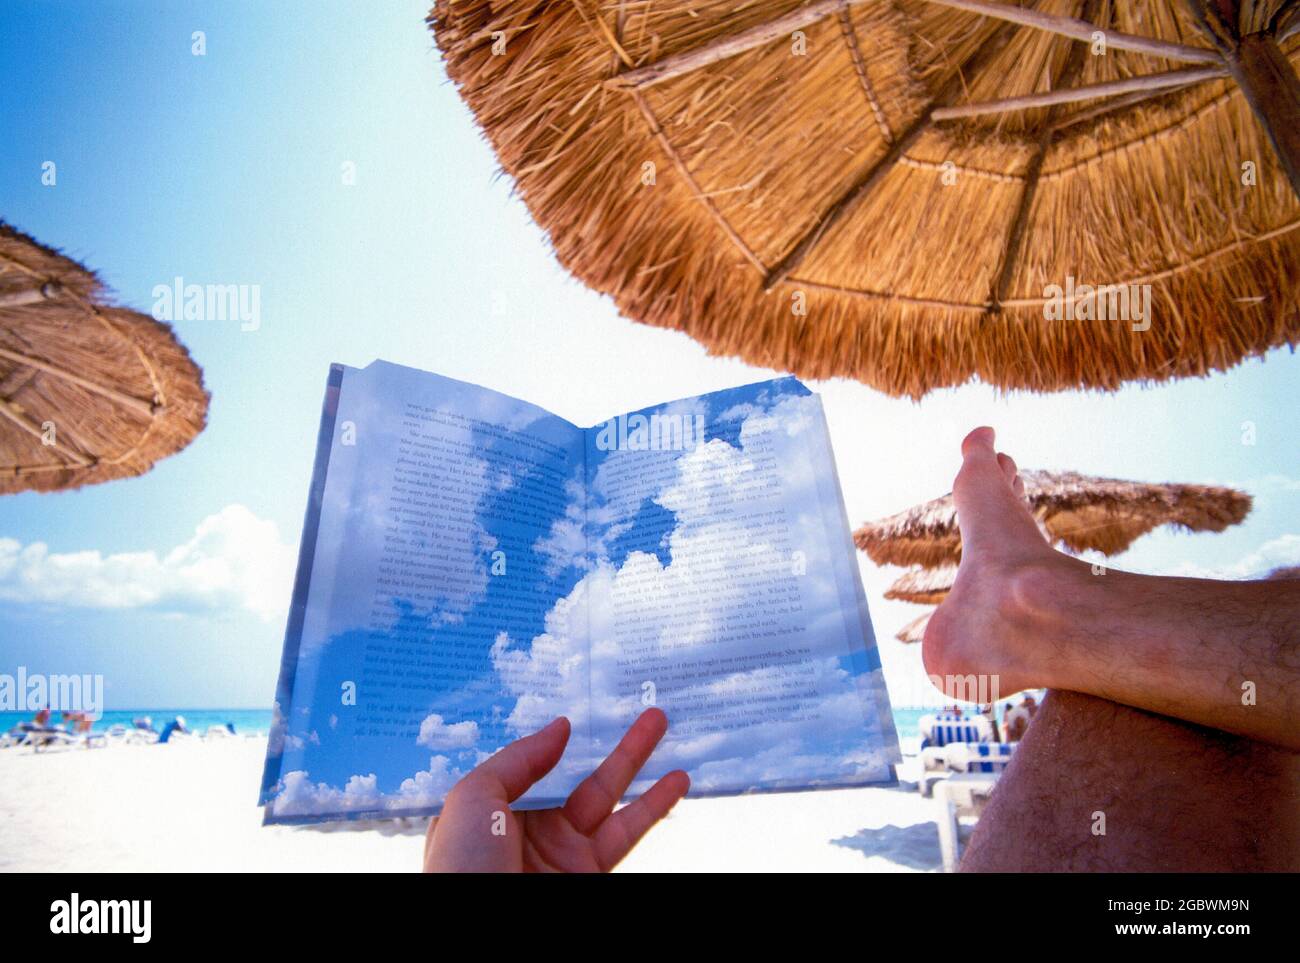 Vacaciones y relajación, persona leyendo un libro en una playa bajo una palapa, concepto de imagen con nubes superpuestas sobre el texto para soñar lejos Foto de stock